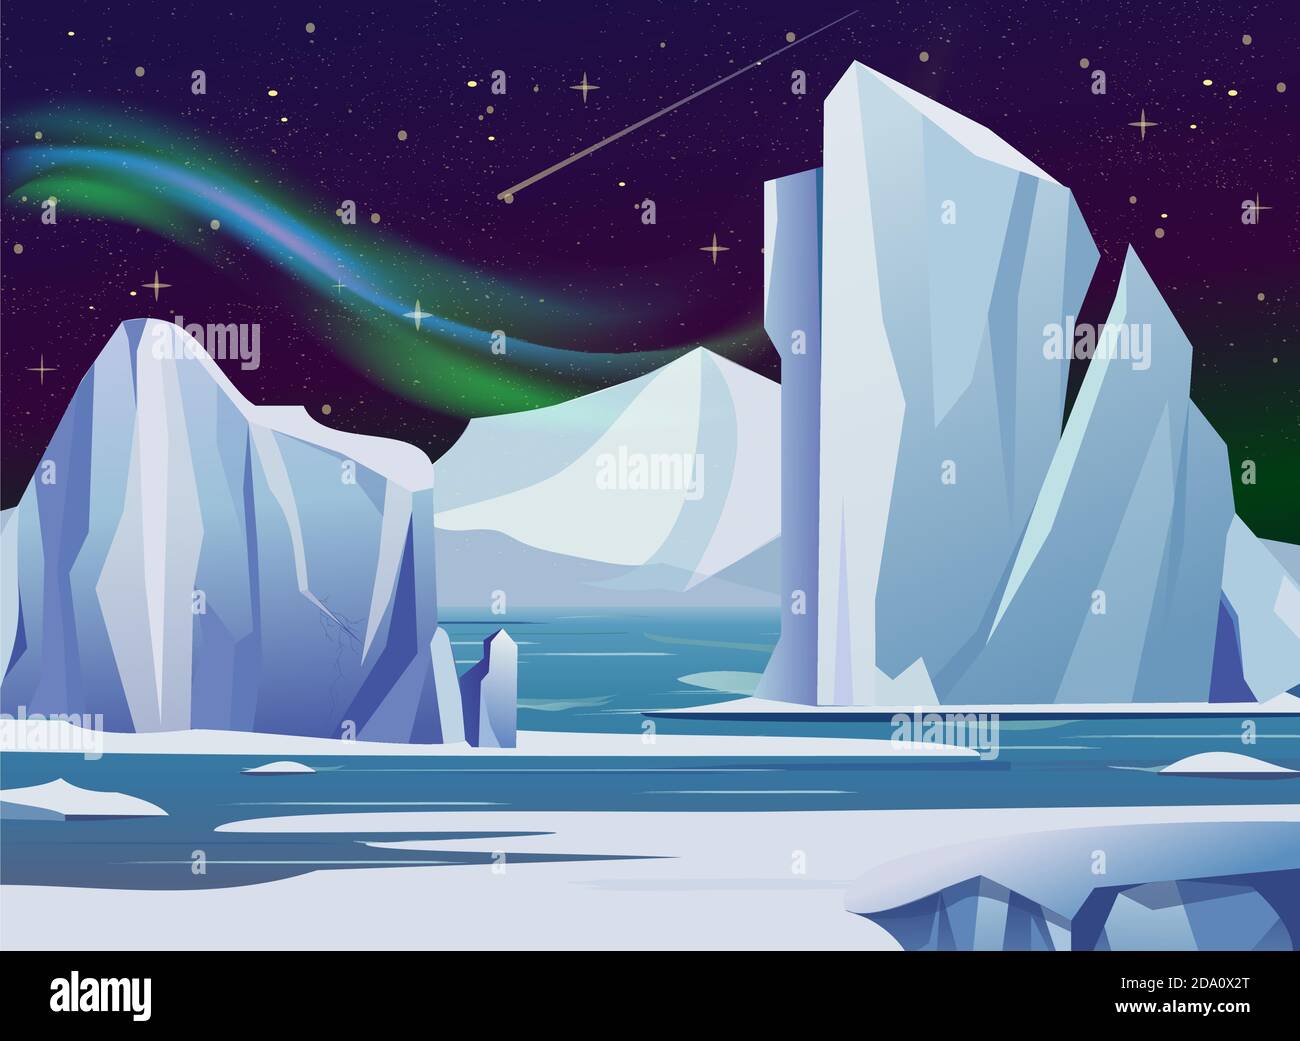 Illustrazione vettoriale paesaggio notturno artico con, iceberg e montagne. Freddo clima inverno sfondo luci polari e stelle. Illustrazione Vettoriale